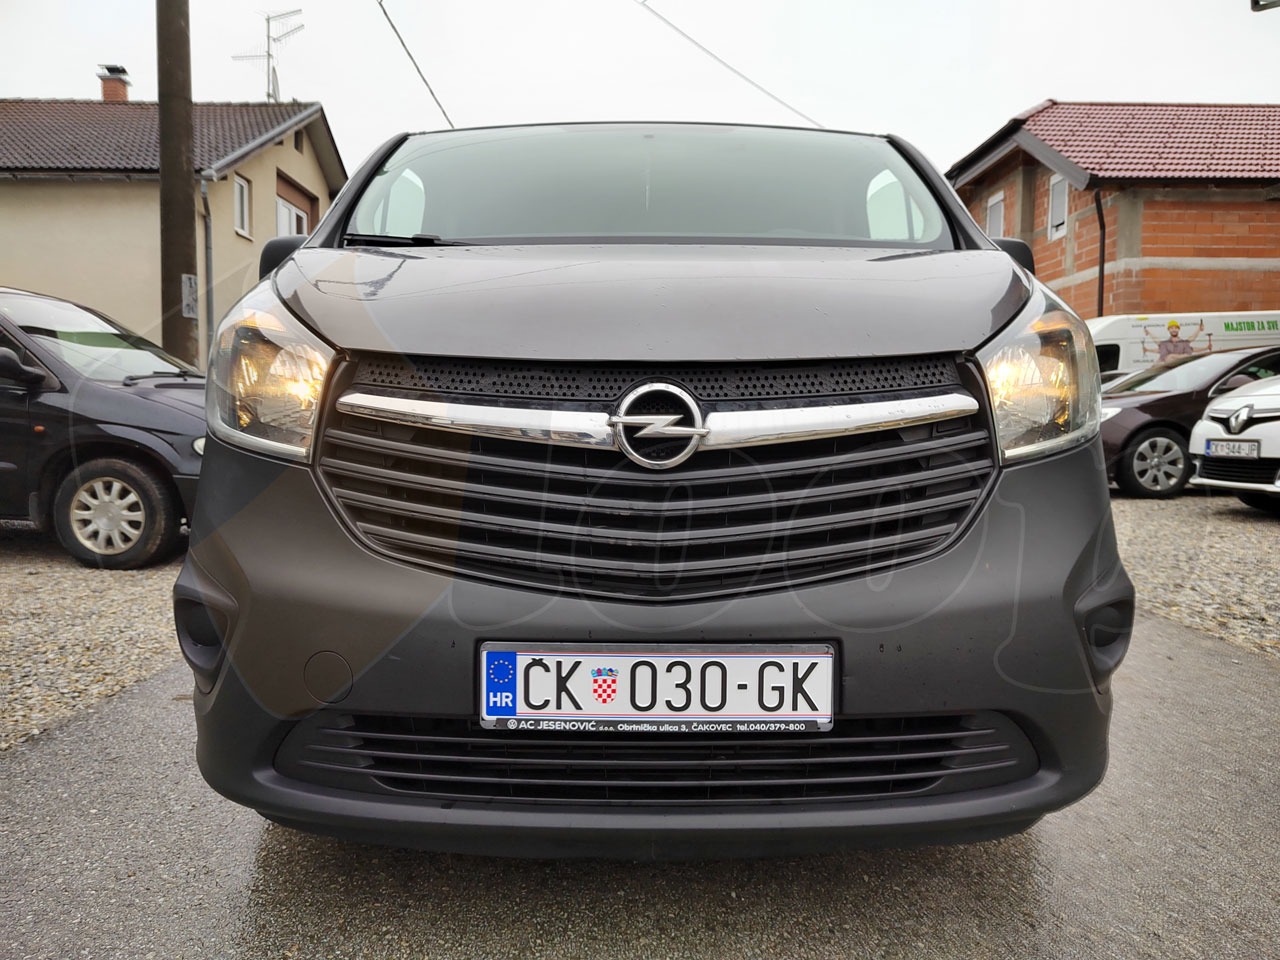 Opel Vivaro 1.6 BITURBO / 2018 / ČK 030 GK